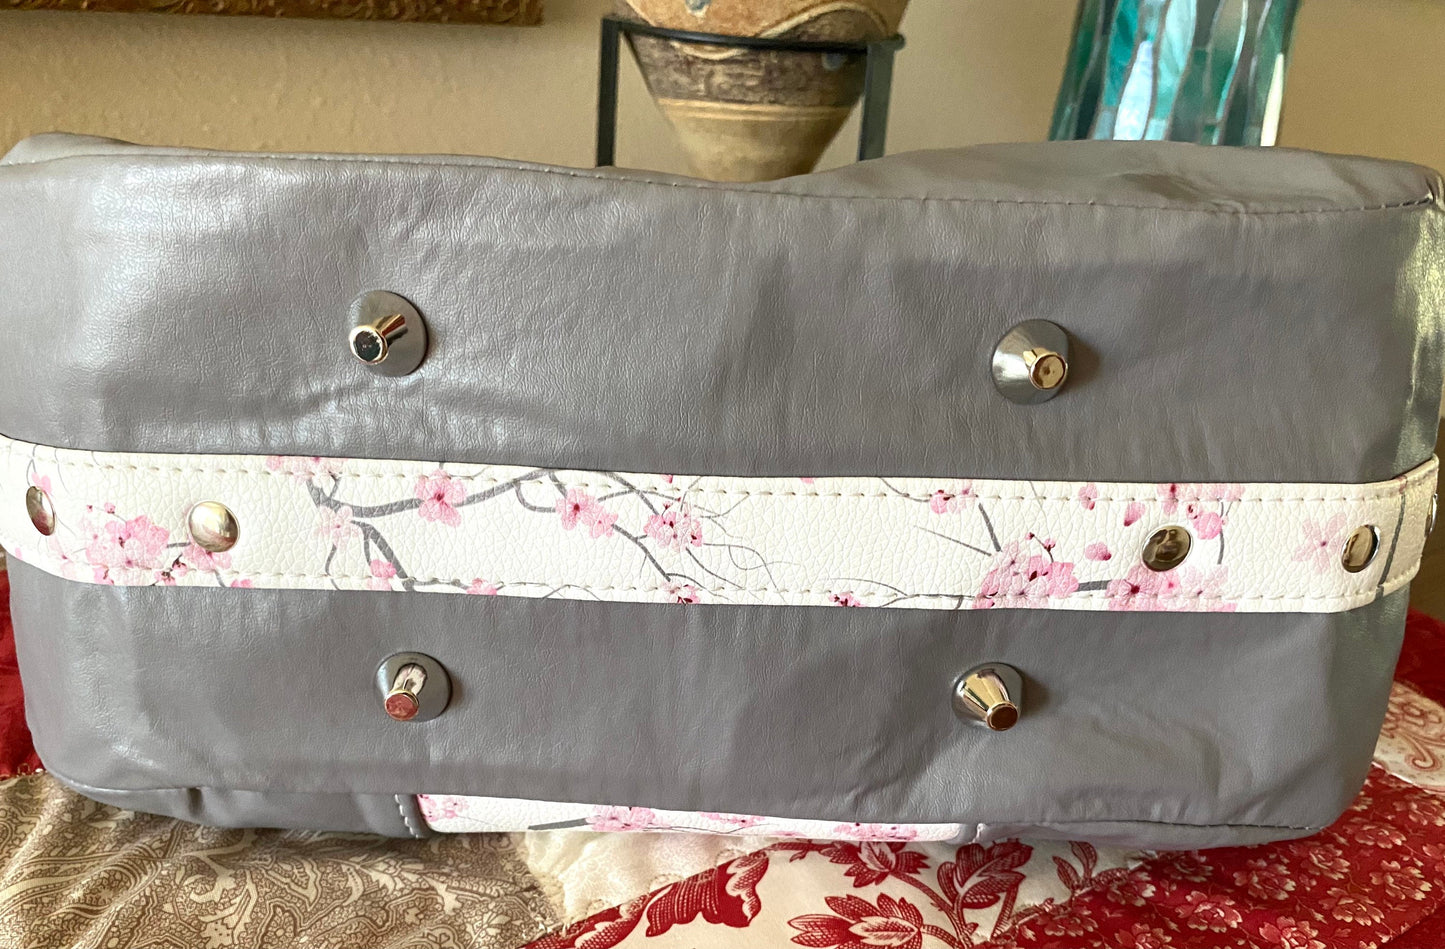 Handbag Purse Tote Flip Top Sakura Pin Flowers Grey Vinyl fabric Shoulder Strap Medium size Divider Pocket Inside